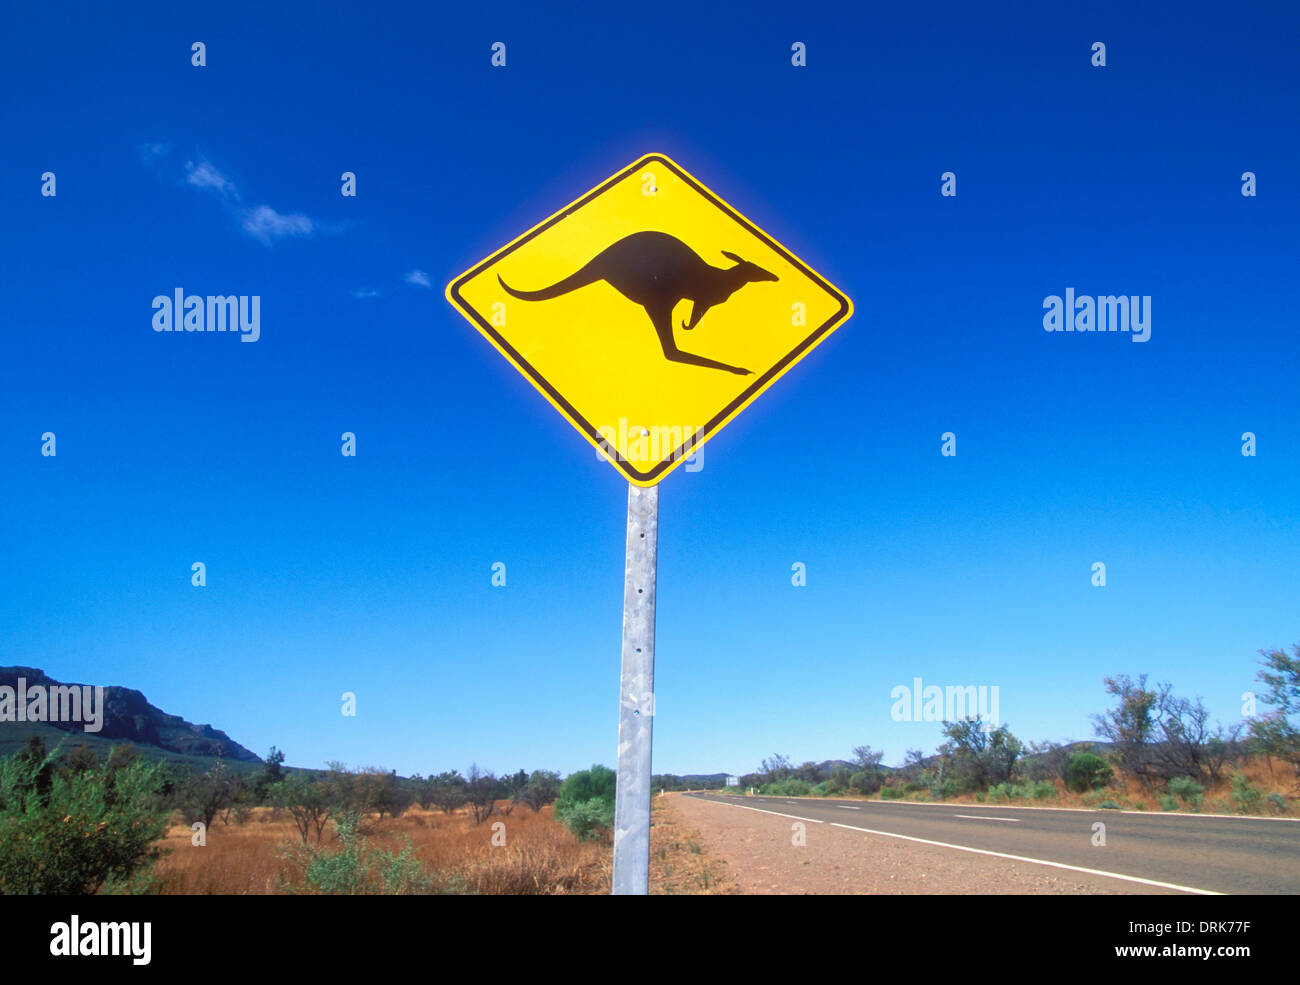 Kangaroo panneau d'avertissement sur une case vide dans le chemin de l'outback du parc national Flinders range près de Wilpena Australie du Sud Banque D'Images